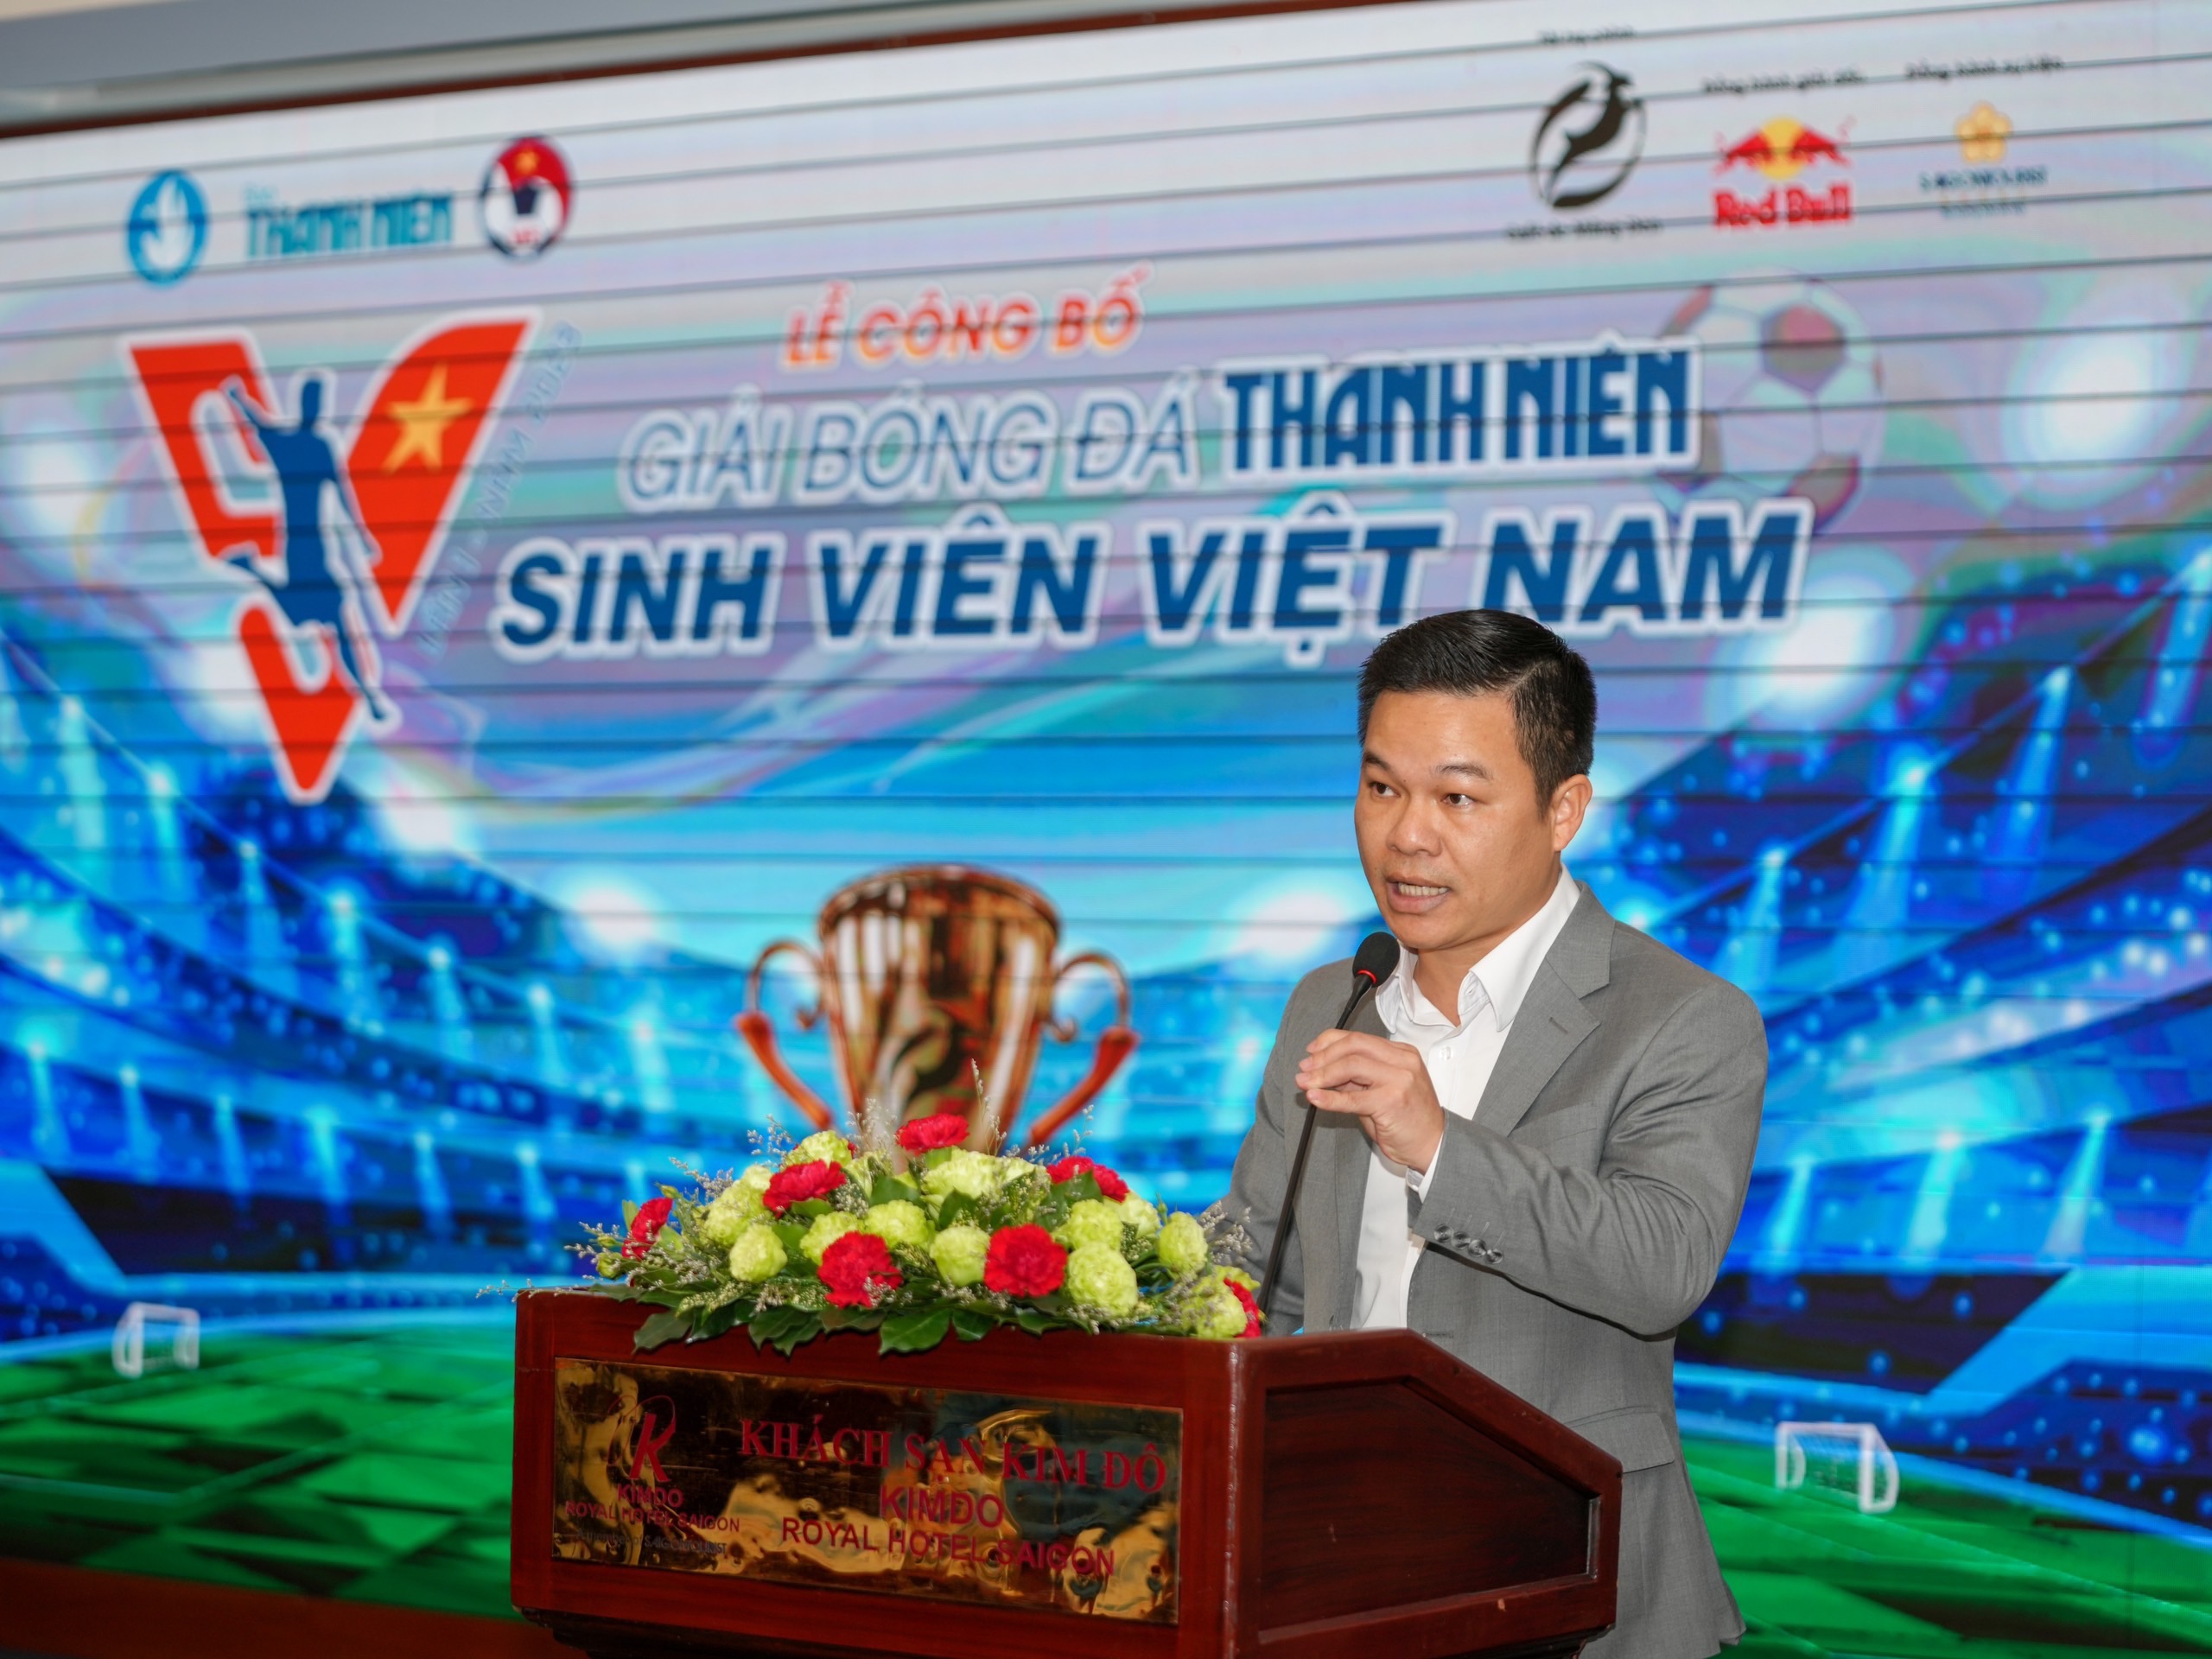 Ông Trần Văn Quỳnh: ‘Giải bóng đá Thanh Niên Sinh viên Việt Nam sẽ rất chuyên nghiệp’